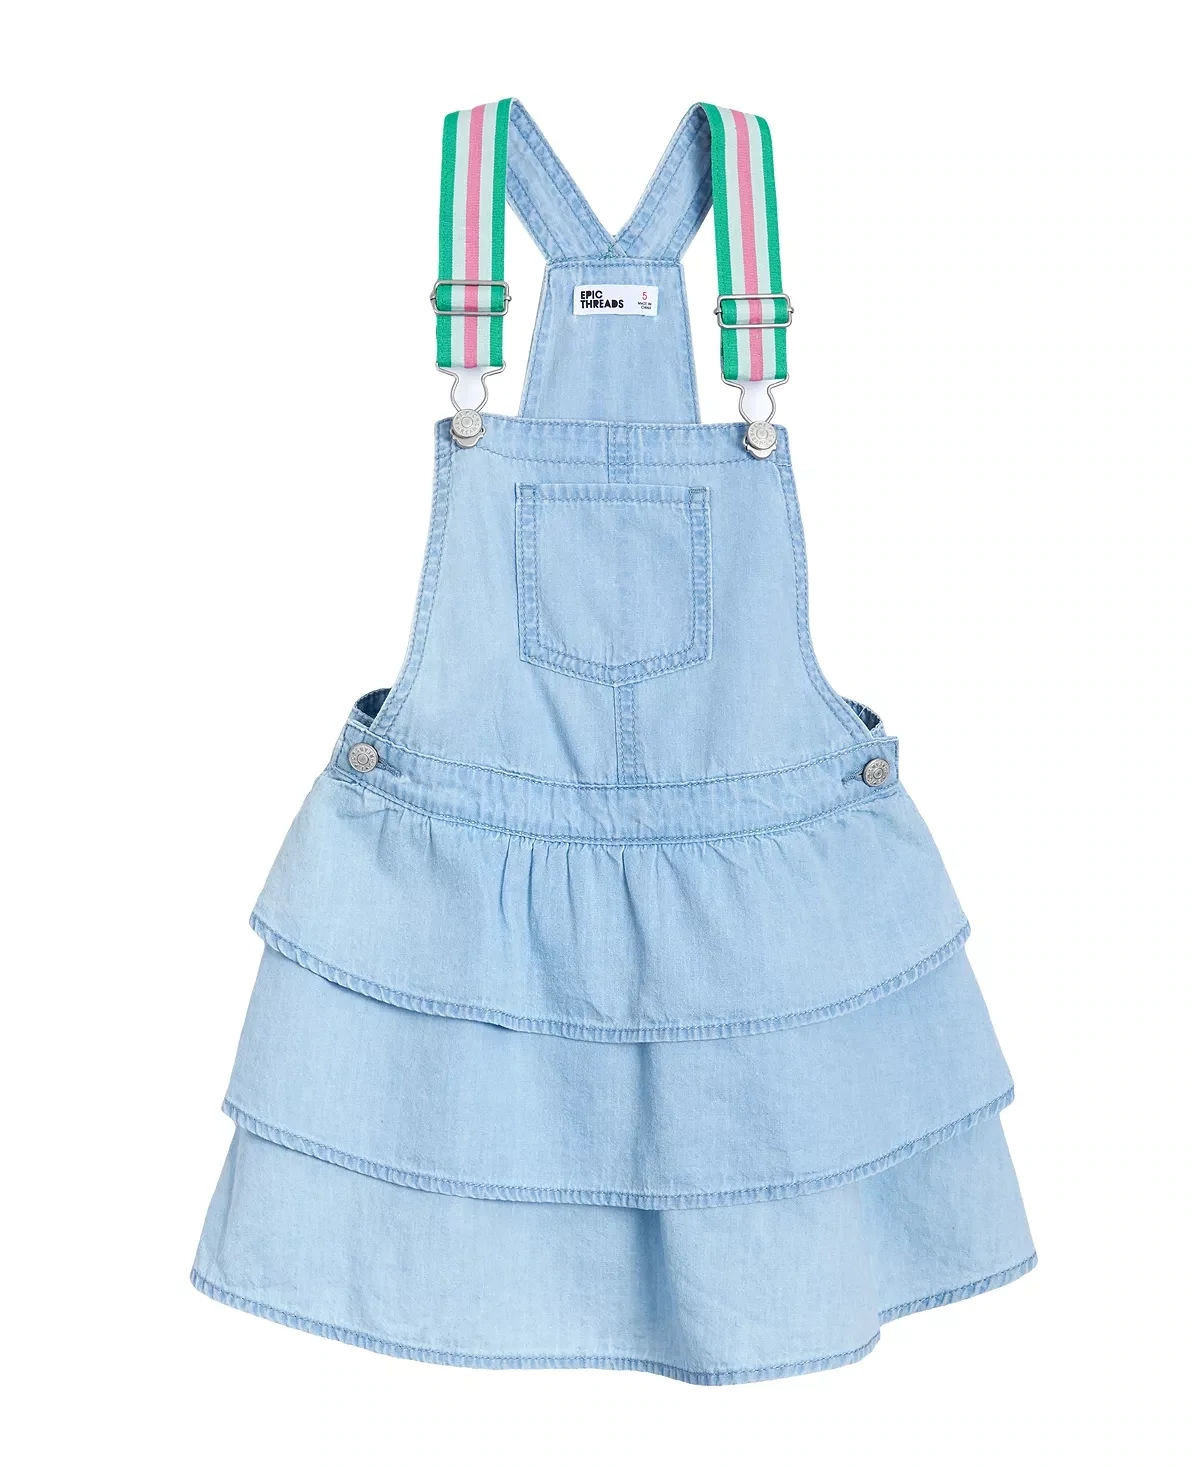 Epic Threads Toddler Girls Ruffled Skirt All, Size 4T